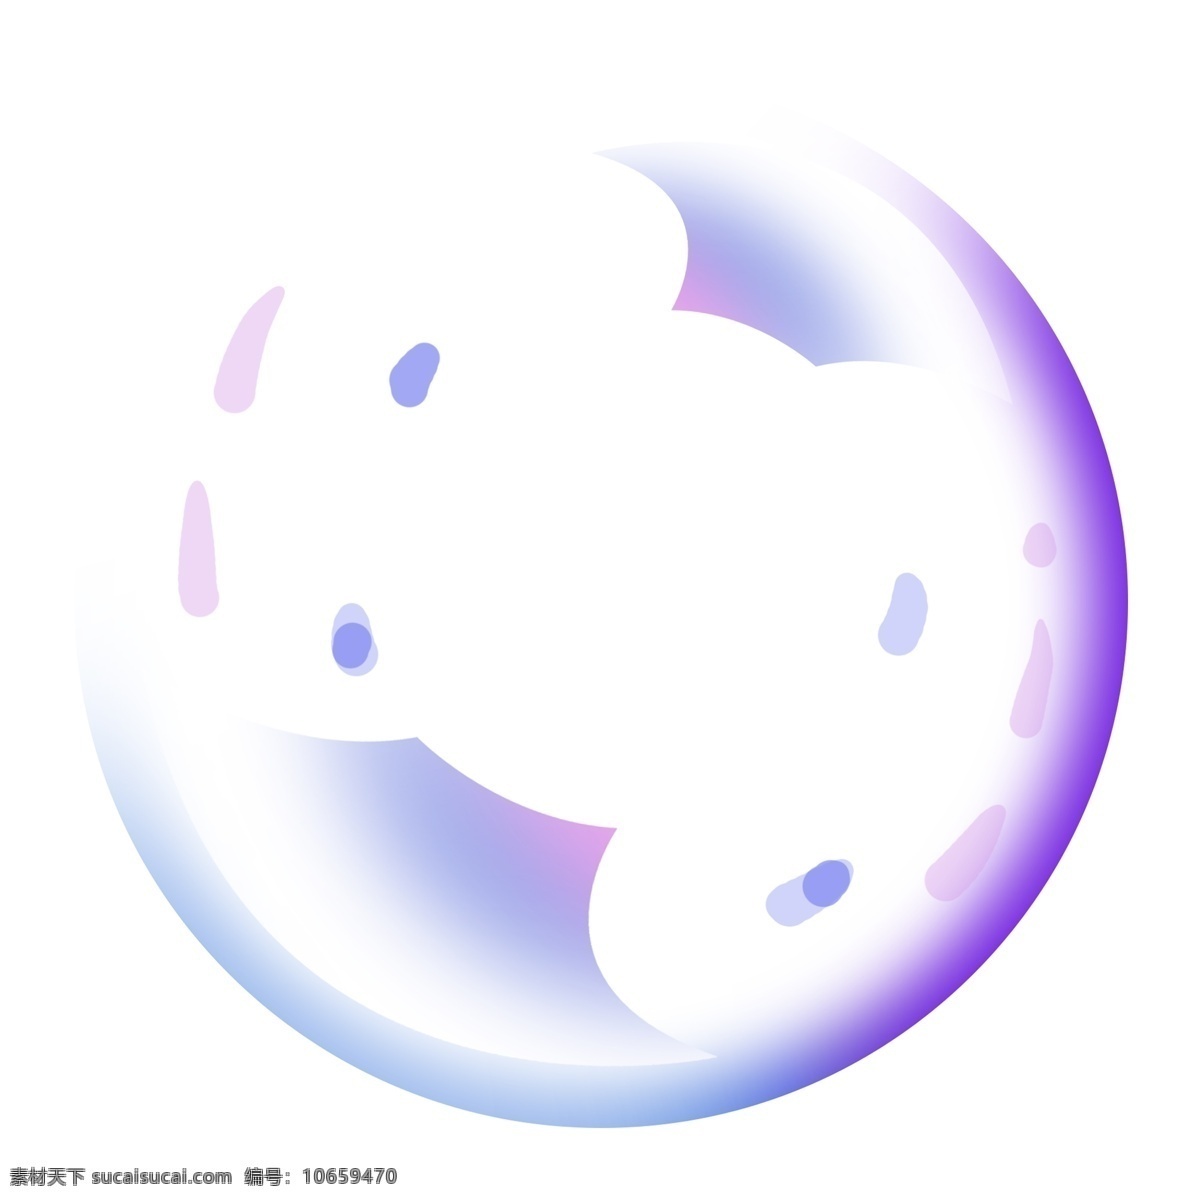 炫彩 紫色 气泡 插画 炫彩的气泡 卡通插画 气泡插画 泡泡插画 晶莹的气泡 漂亮的气泡 紫色的气泡